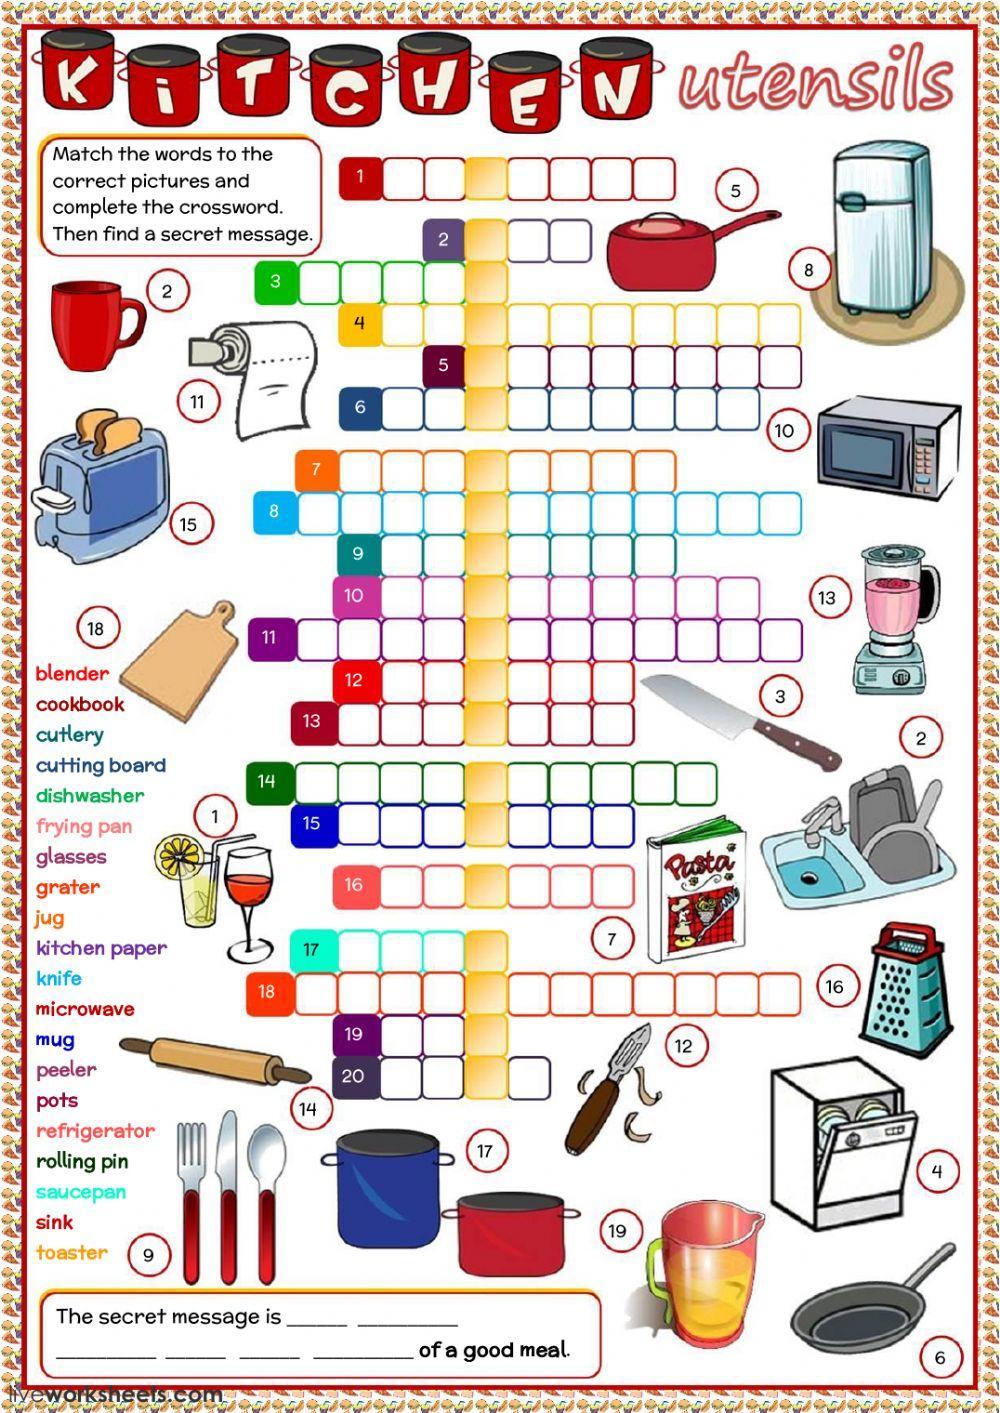 Kitchen utensils - crossword